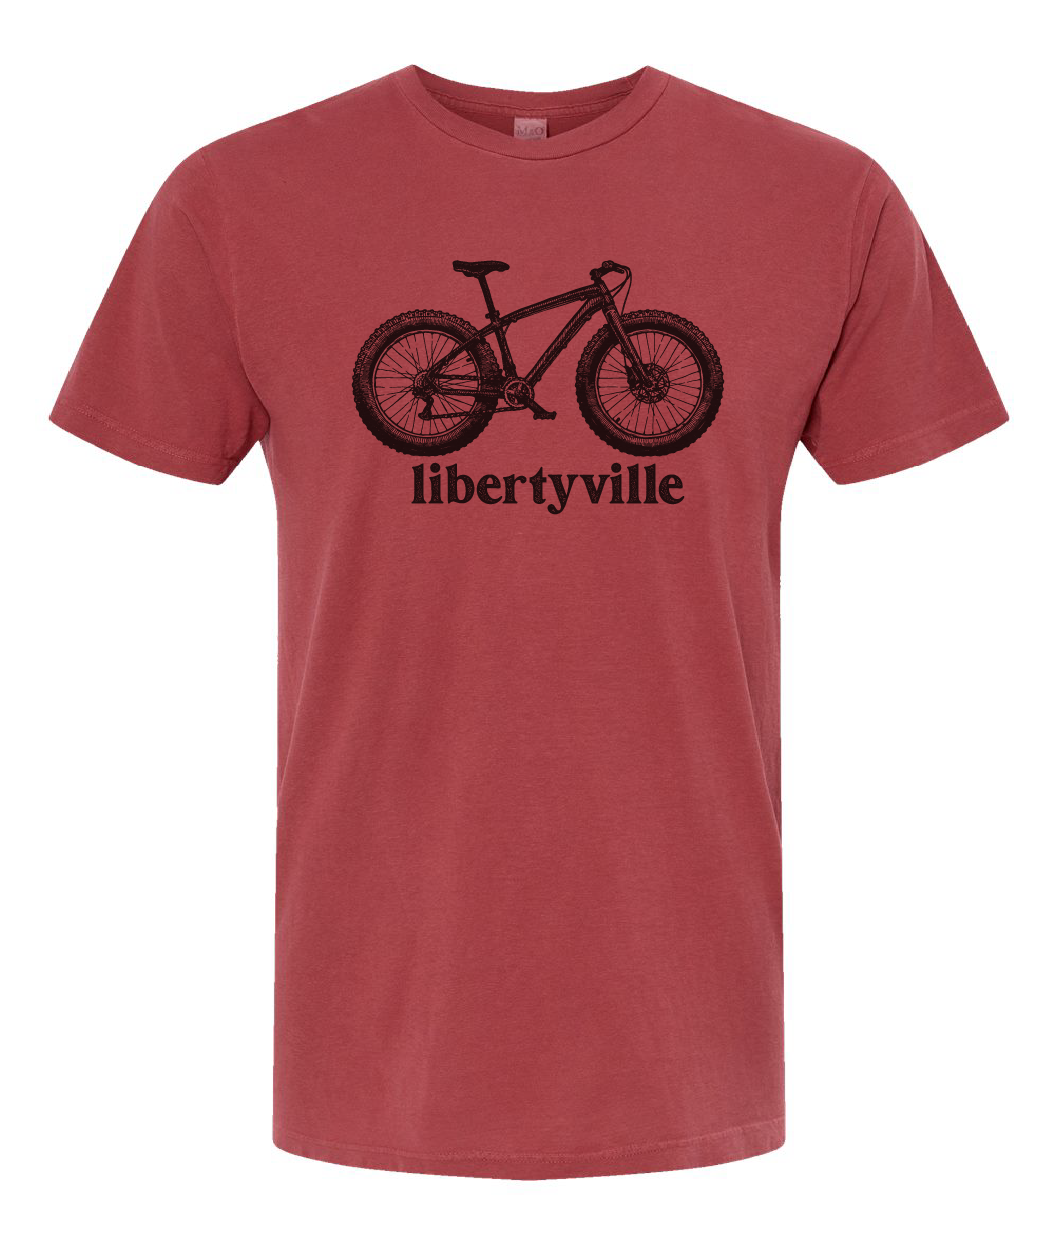 Bike Libertyville Tee